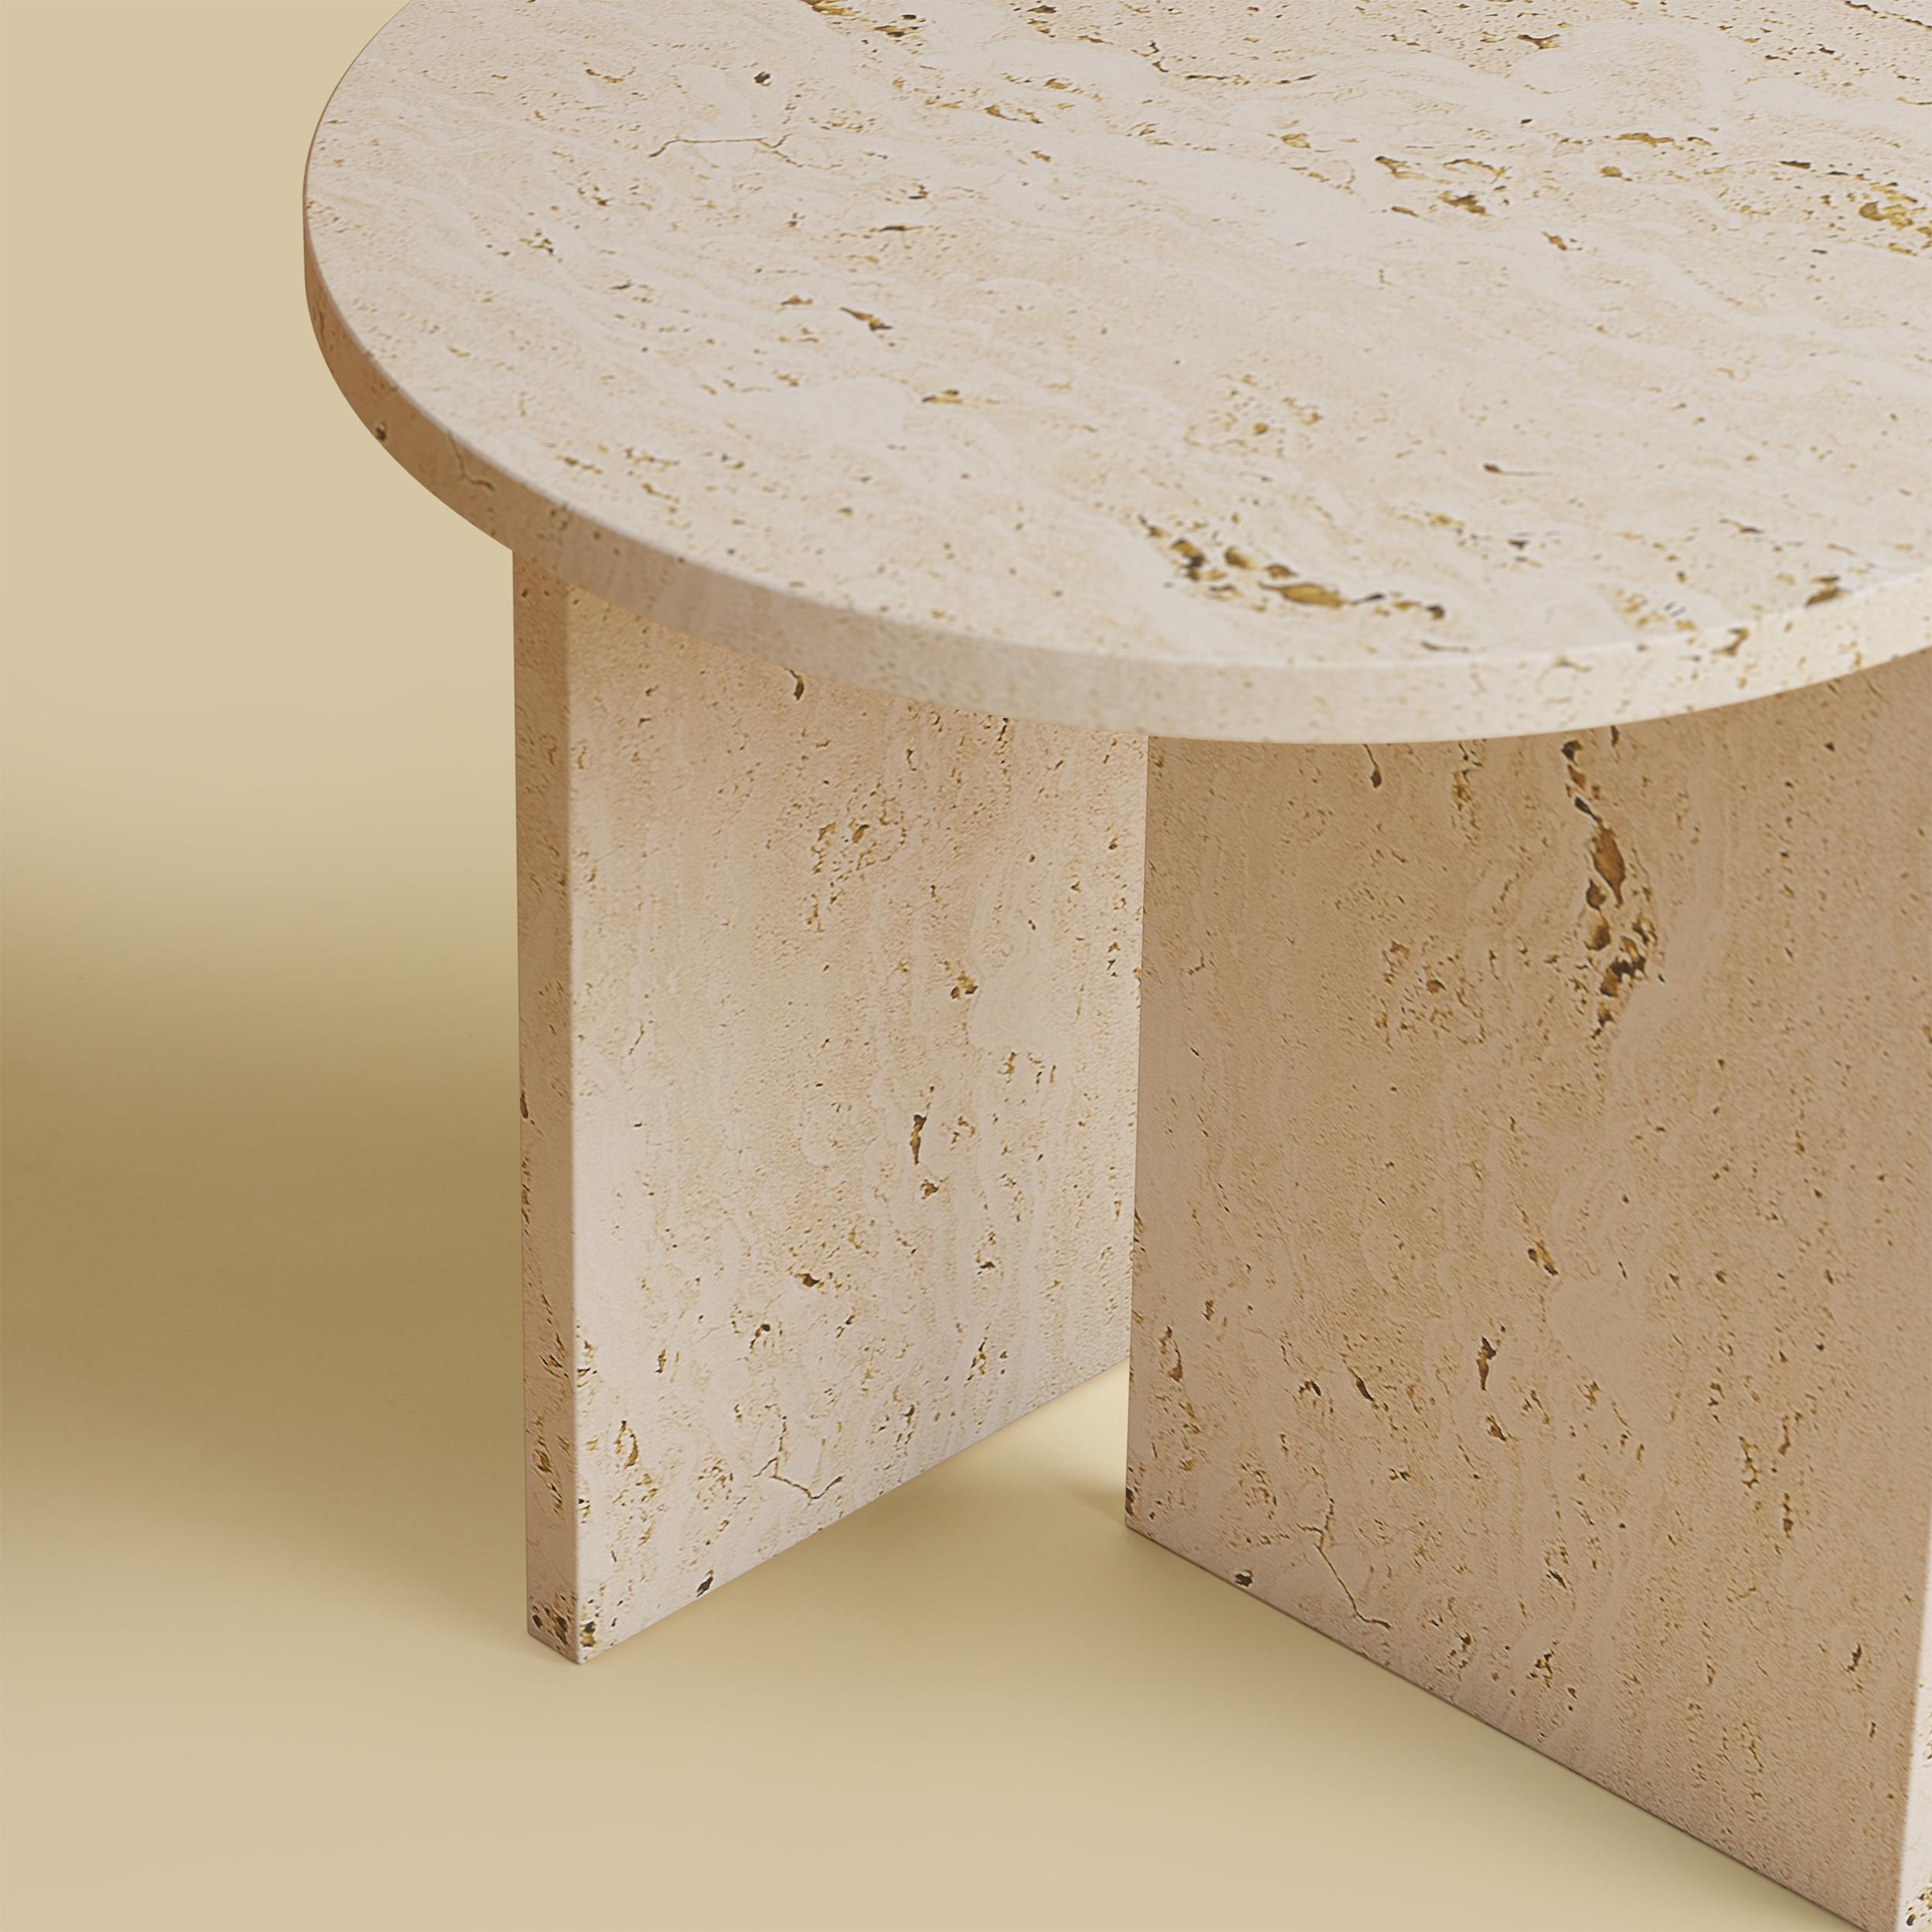 La table basse Kyushu est entièrement réalisée en travertin romain. Le plateau est circulaire et mesure 45 cm de diamètre. Les pieds sont constitués de deux plaques de marbre dont une partie est incrustée sur le plateau, ce qui constitue un détail